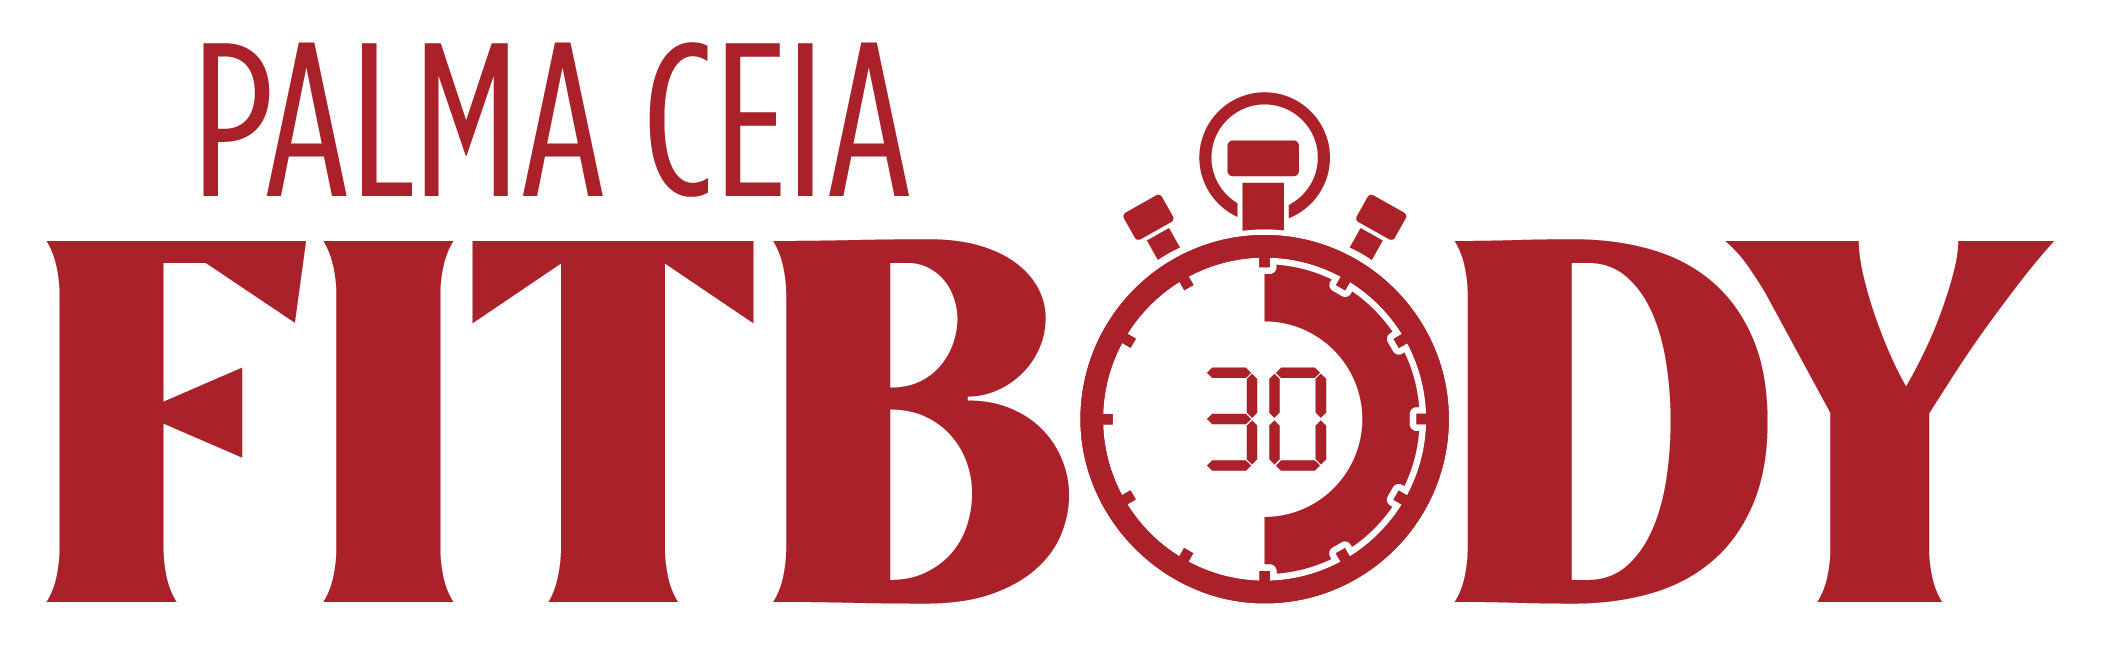 Palma Ceia Fit Body logo